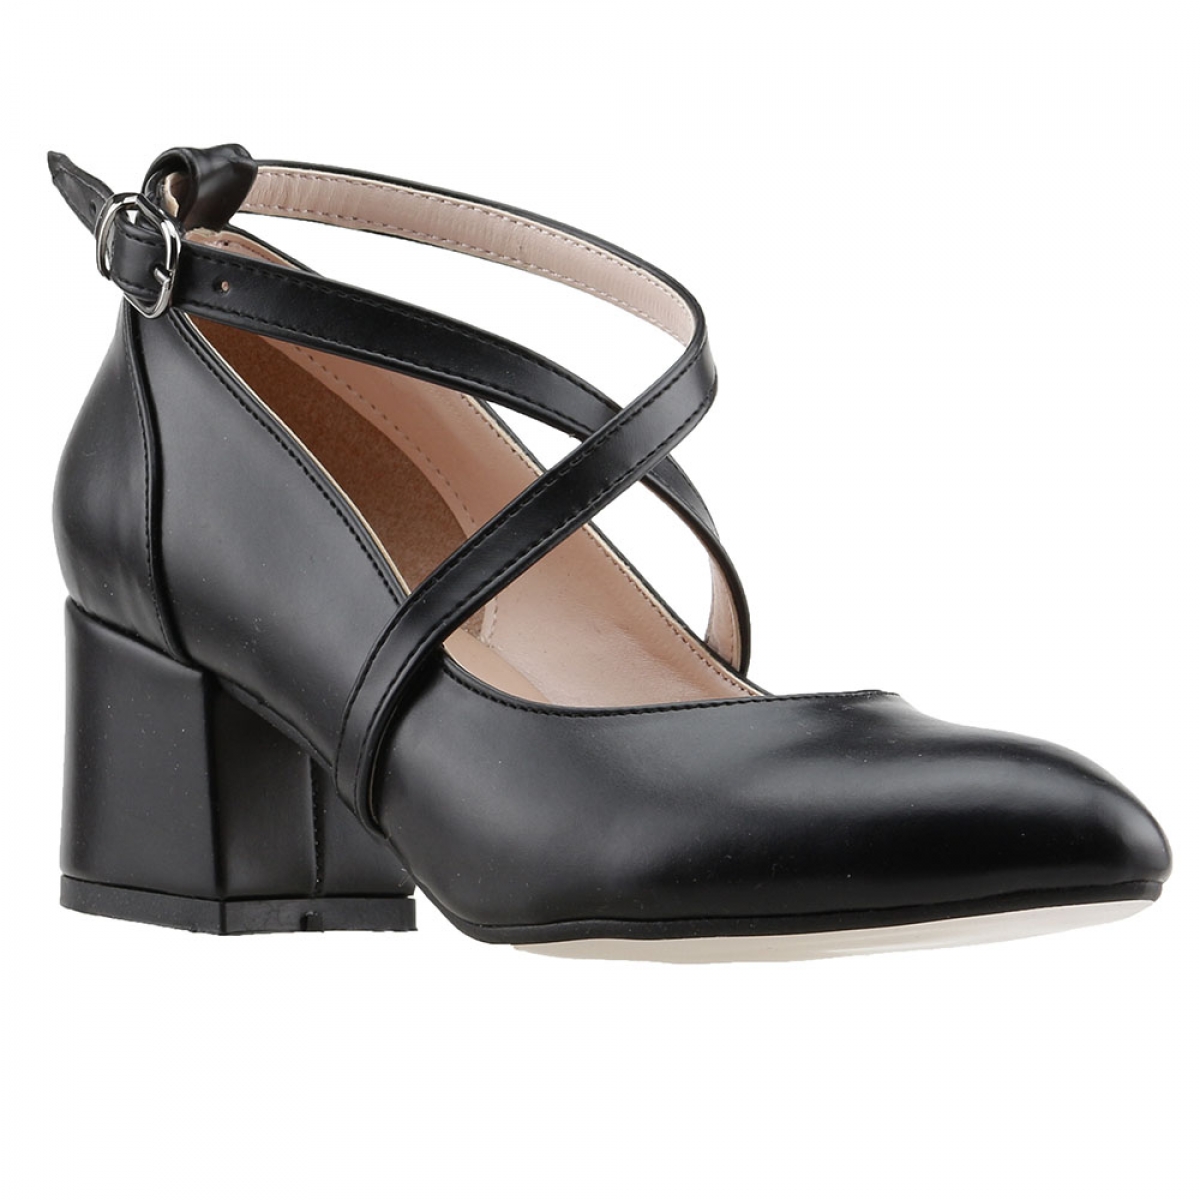 Flo 544-1121 Cilt 5 Cm Topuk Bayan Sandalet Ayakkabı Siyah. 3